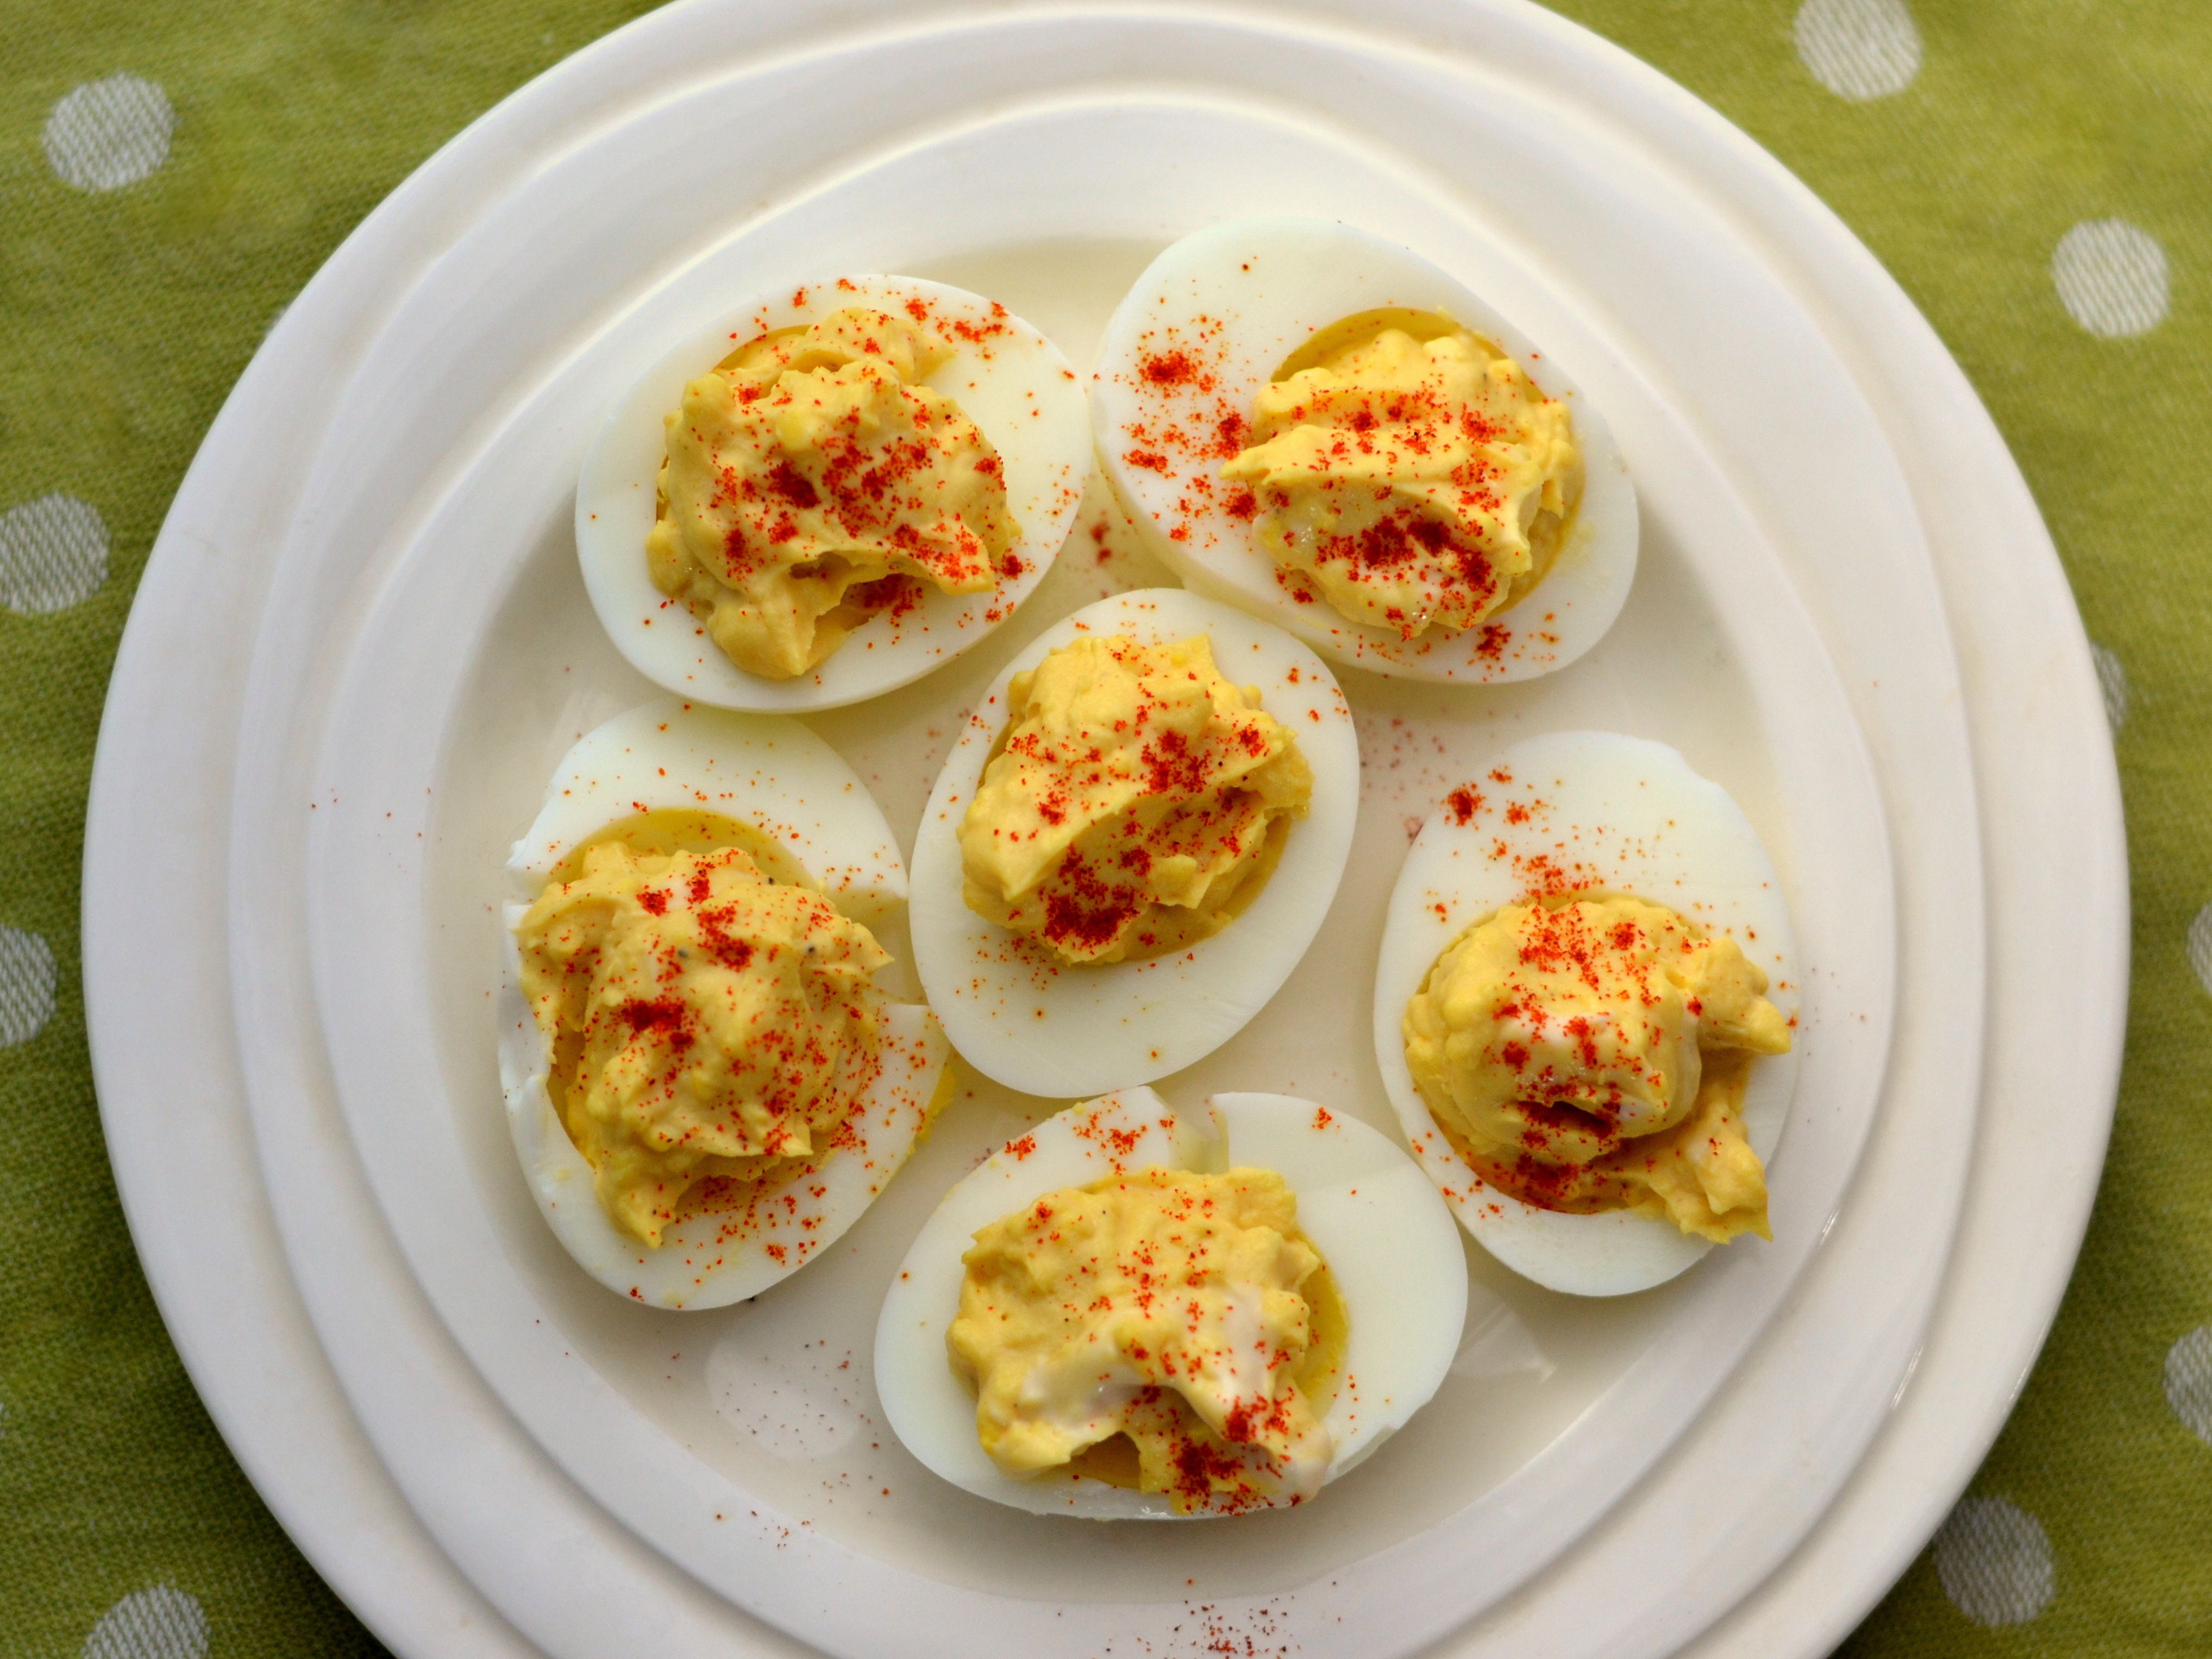 Huevos rellenos o diabólicos con pimentón y perejil en plato azul para mesa  de pascua. Plato tradicional para Pascua. Comida saludable de la dieta para  el desayuno. Vista superior Fotografía de stock 